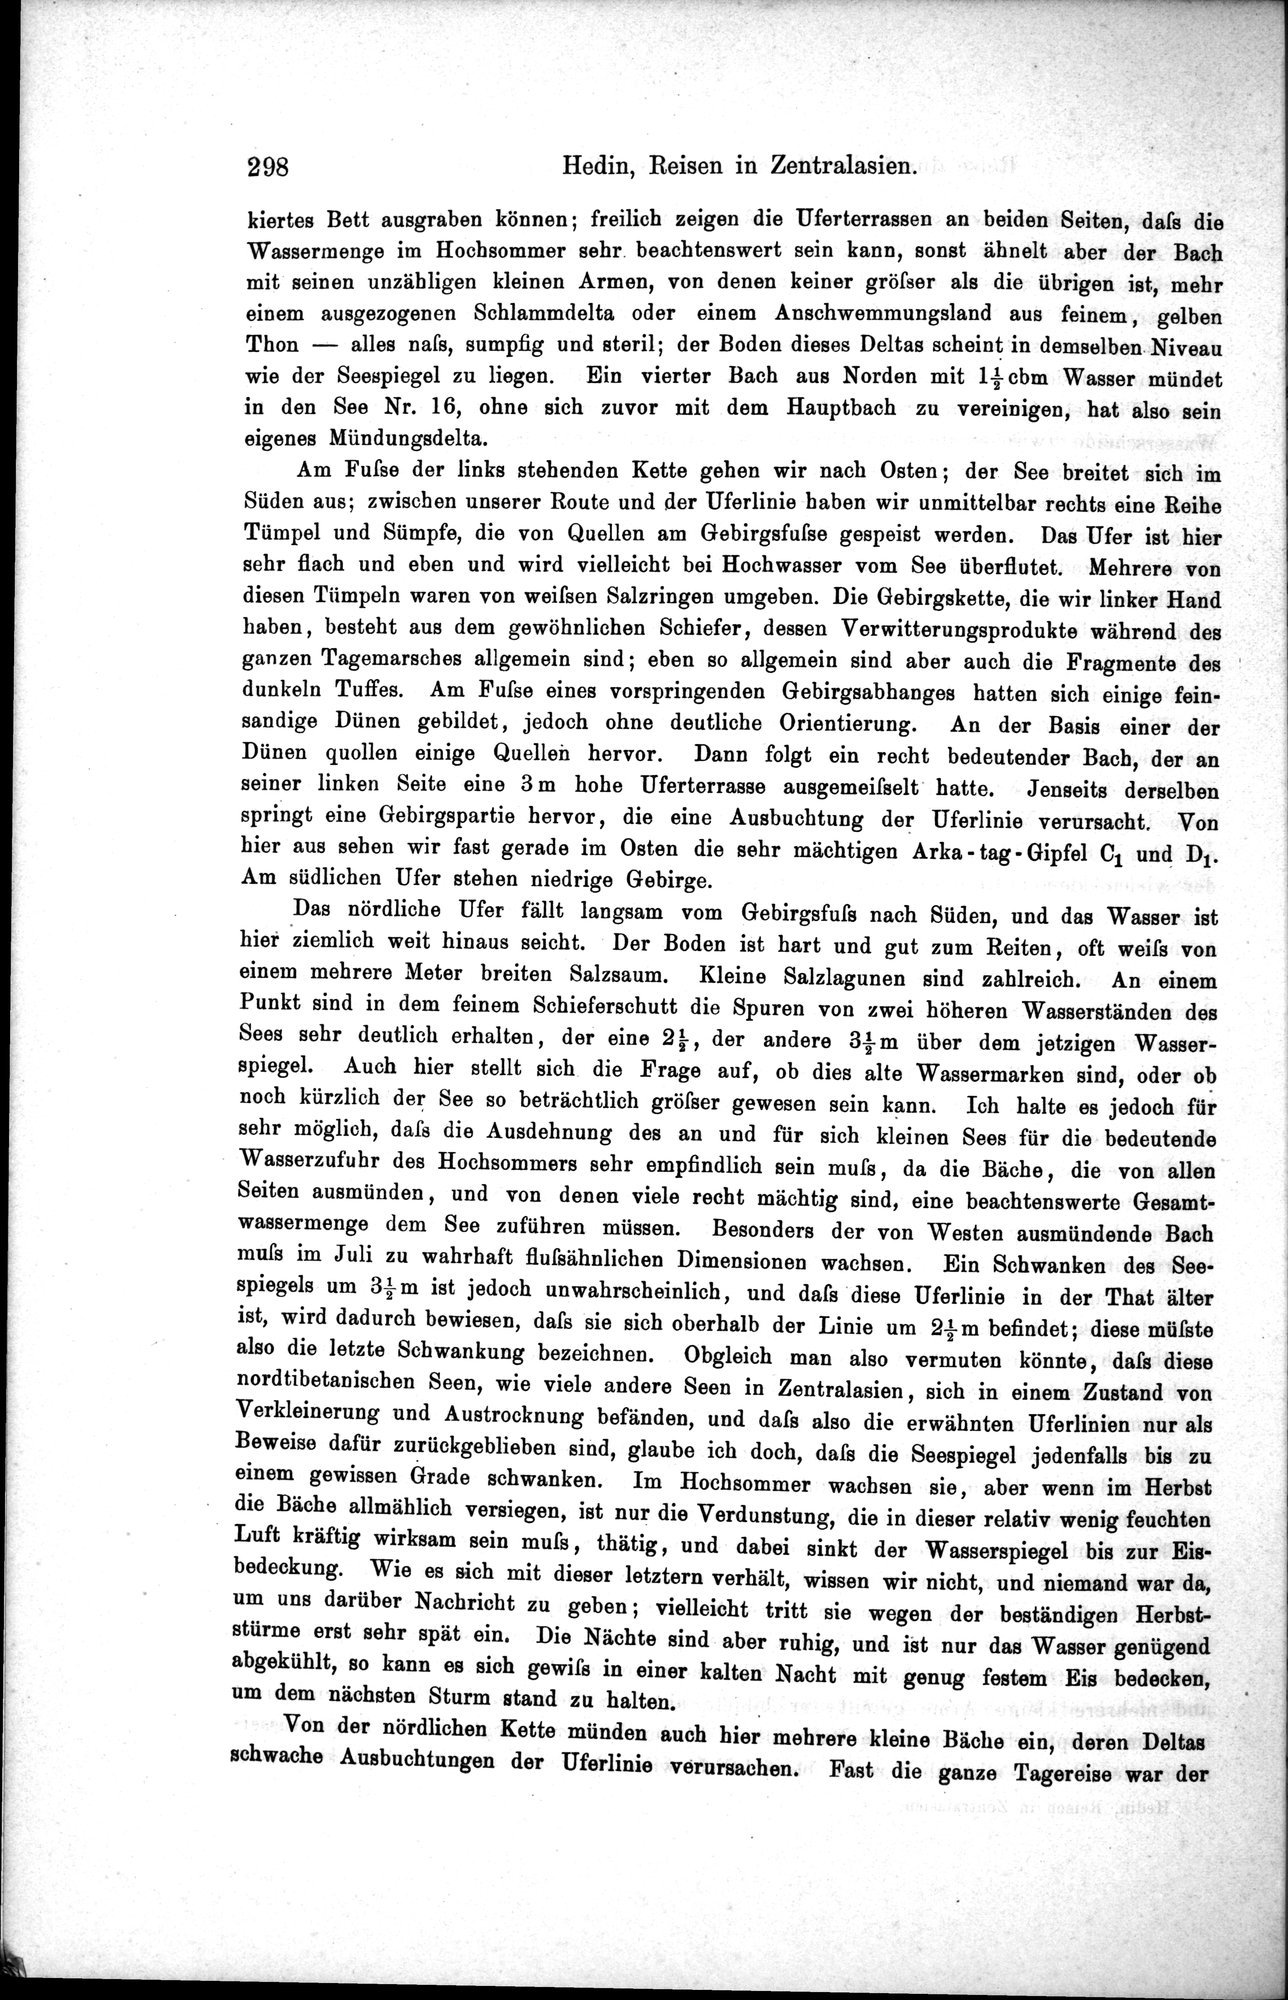 Die Geographische-Wissenschaftlichen Ergebnisse meiner Reisen in Zentralasien, 1894-1897 : vol.1 / Page 310 (Grayscale High Resolution Image)